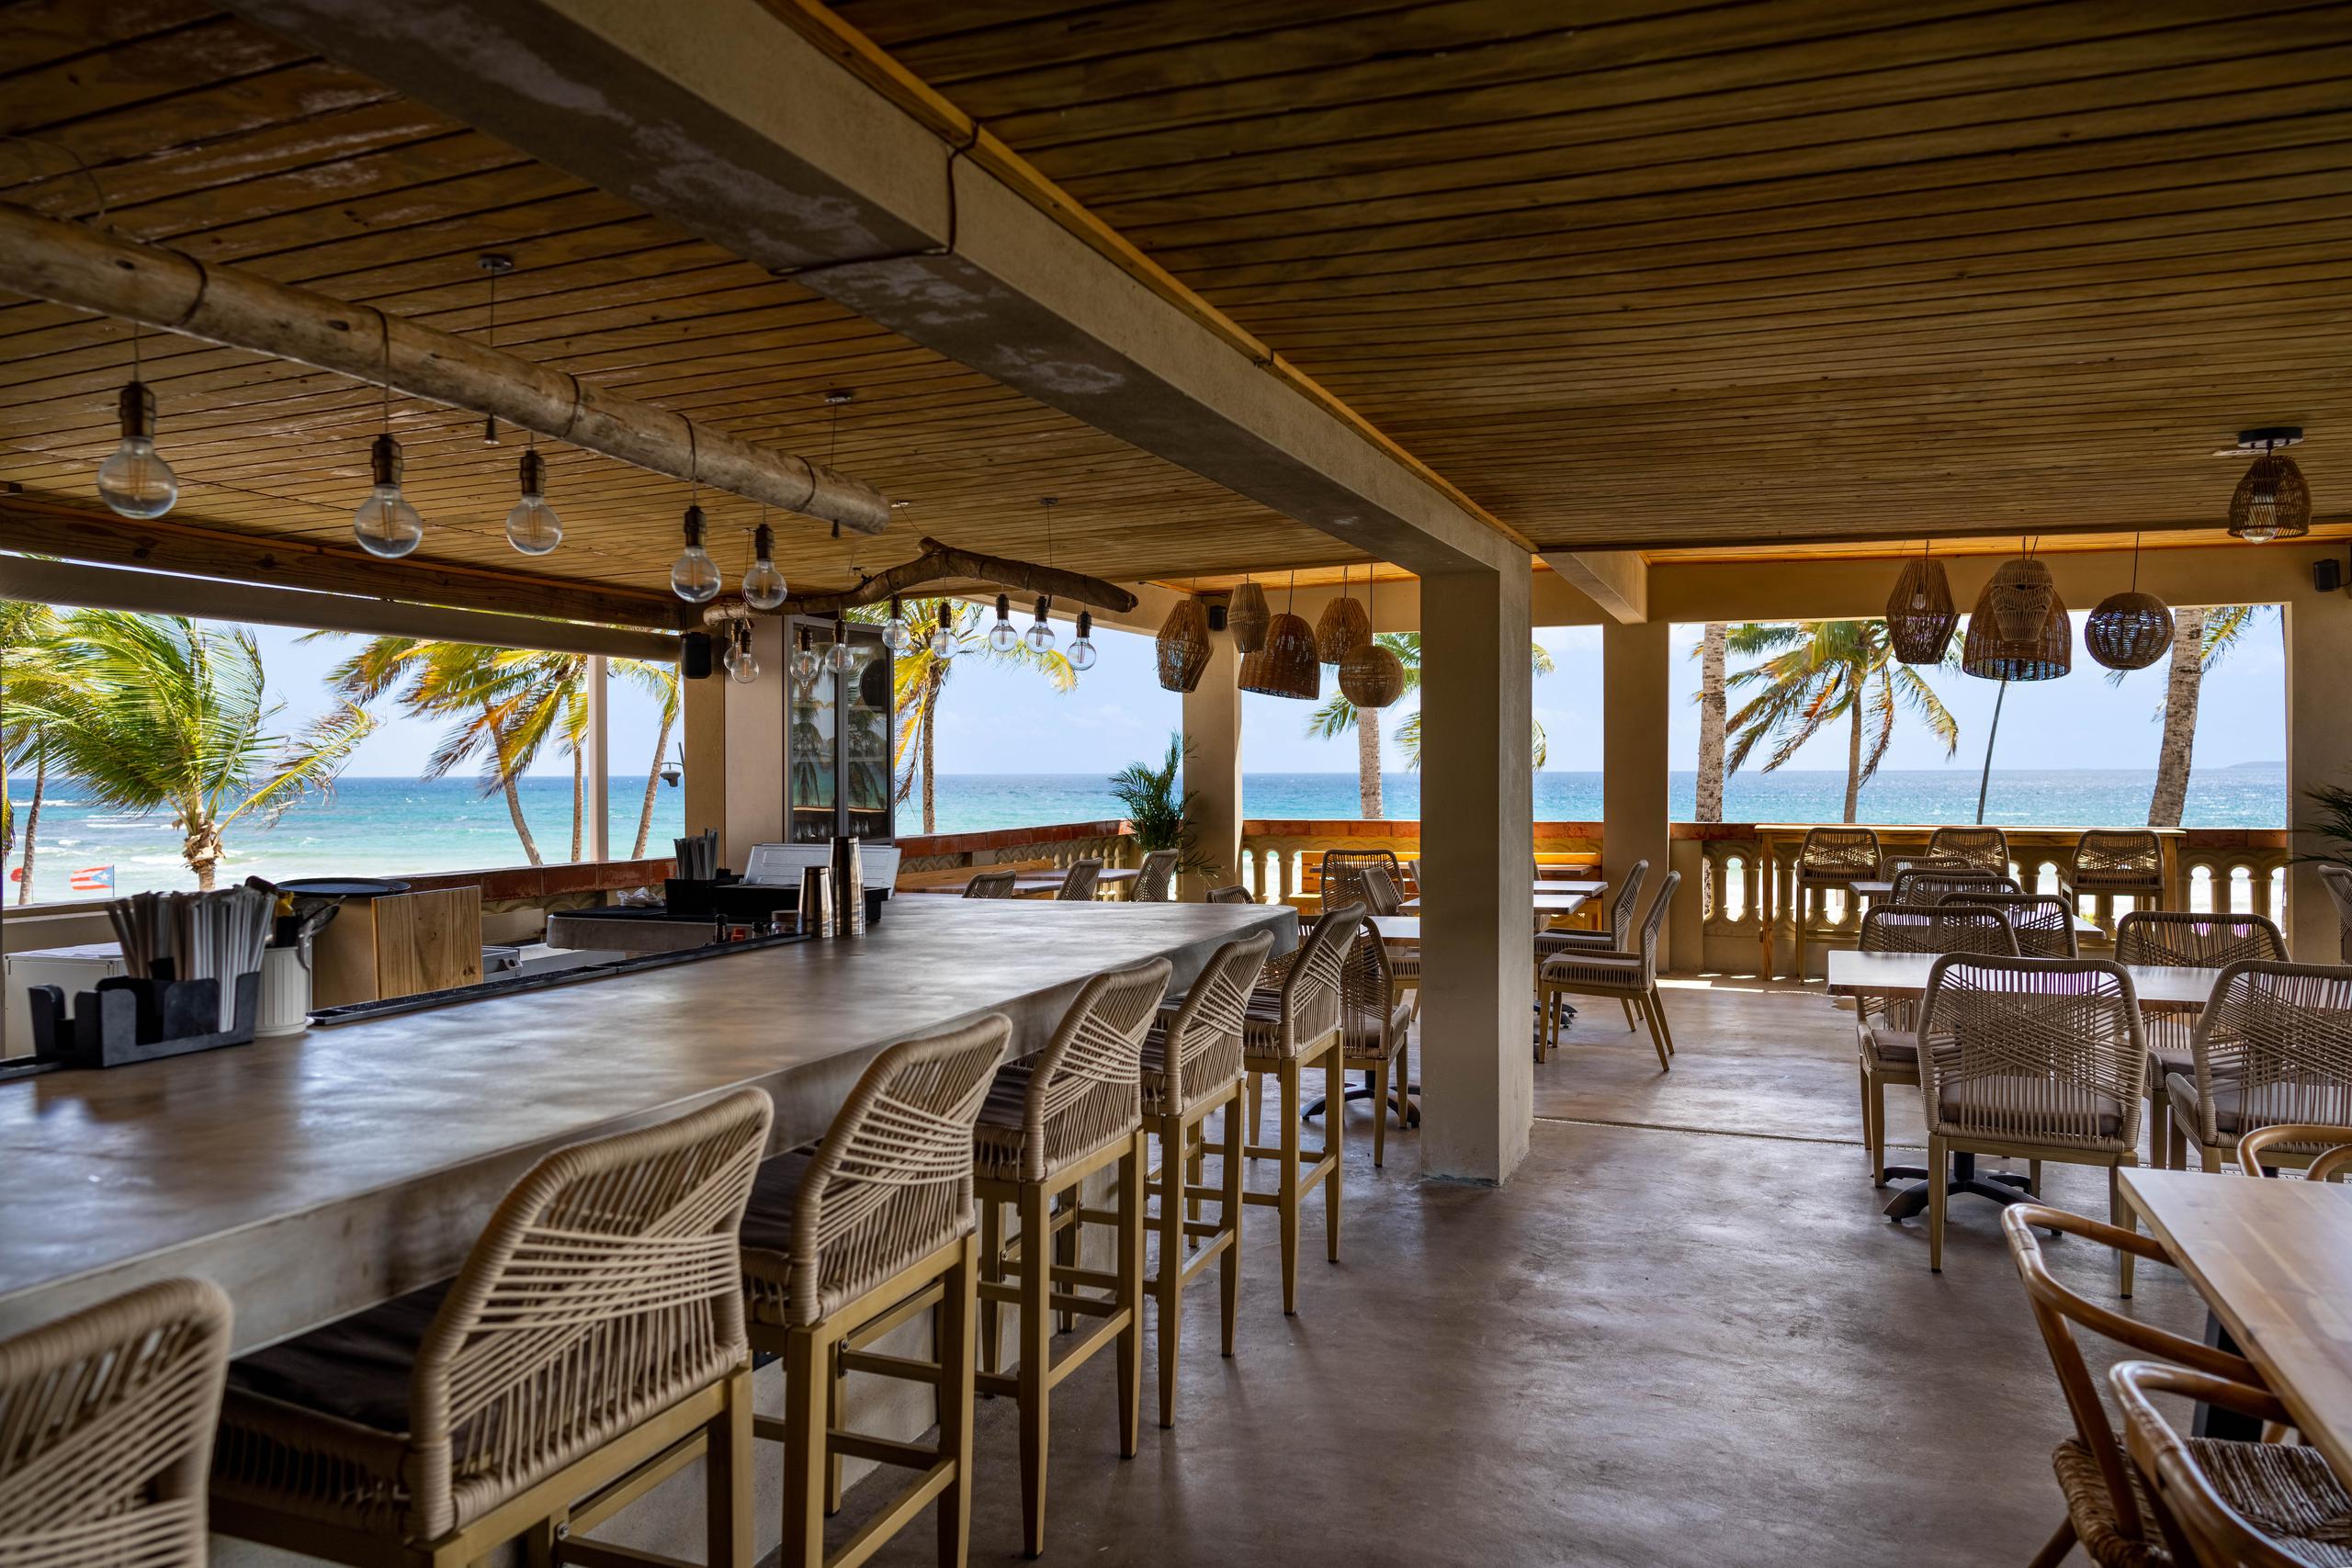 El sonido del mar y los hermosos atardeceres son parte de los atractivos de Luquillo Sunrise Beach Inn.